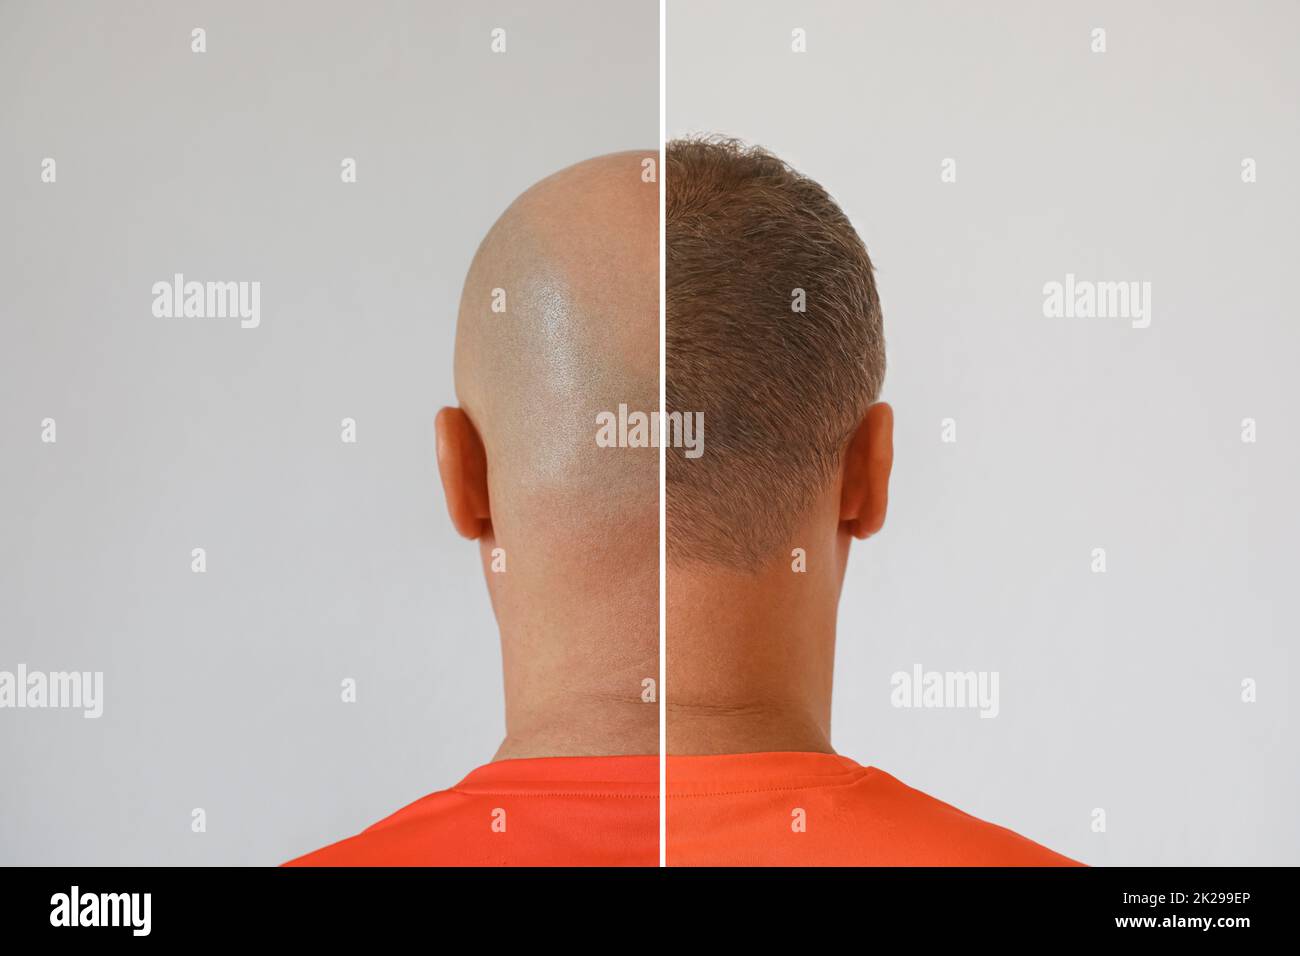 La testa di un uomo balding prima e dopo l'intervento chirurgico di trapianto di capelli. Un uomo che perde i capelli è diventato timonoso. Un poster pubblicitario per i capelli Foto Stock